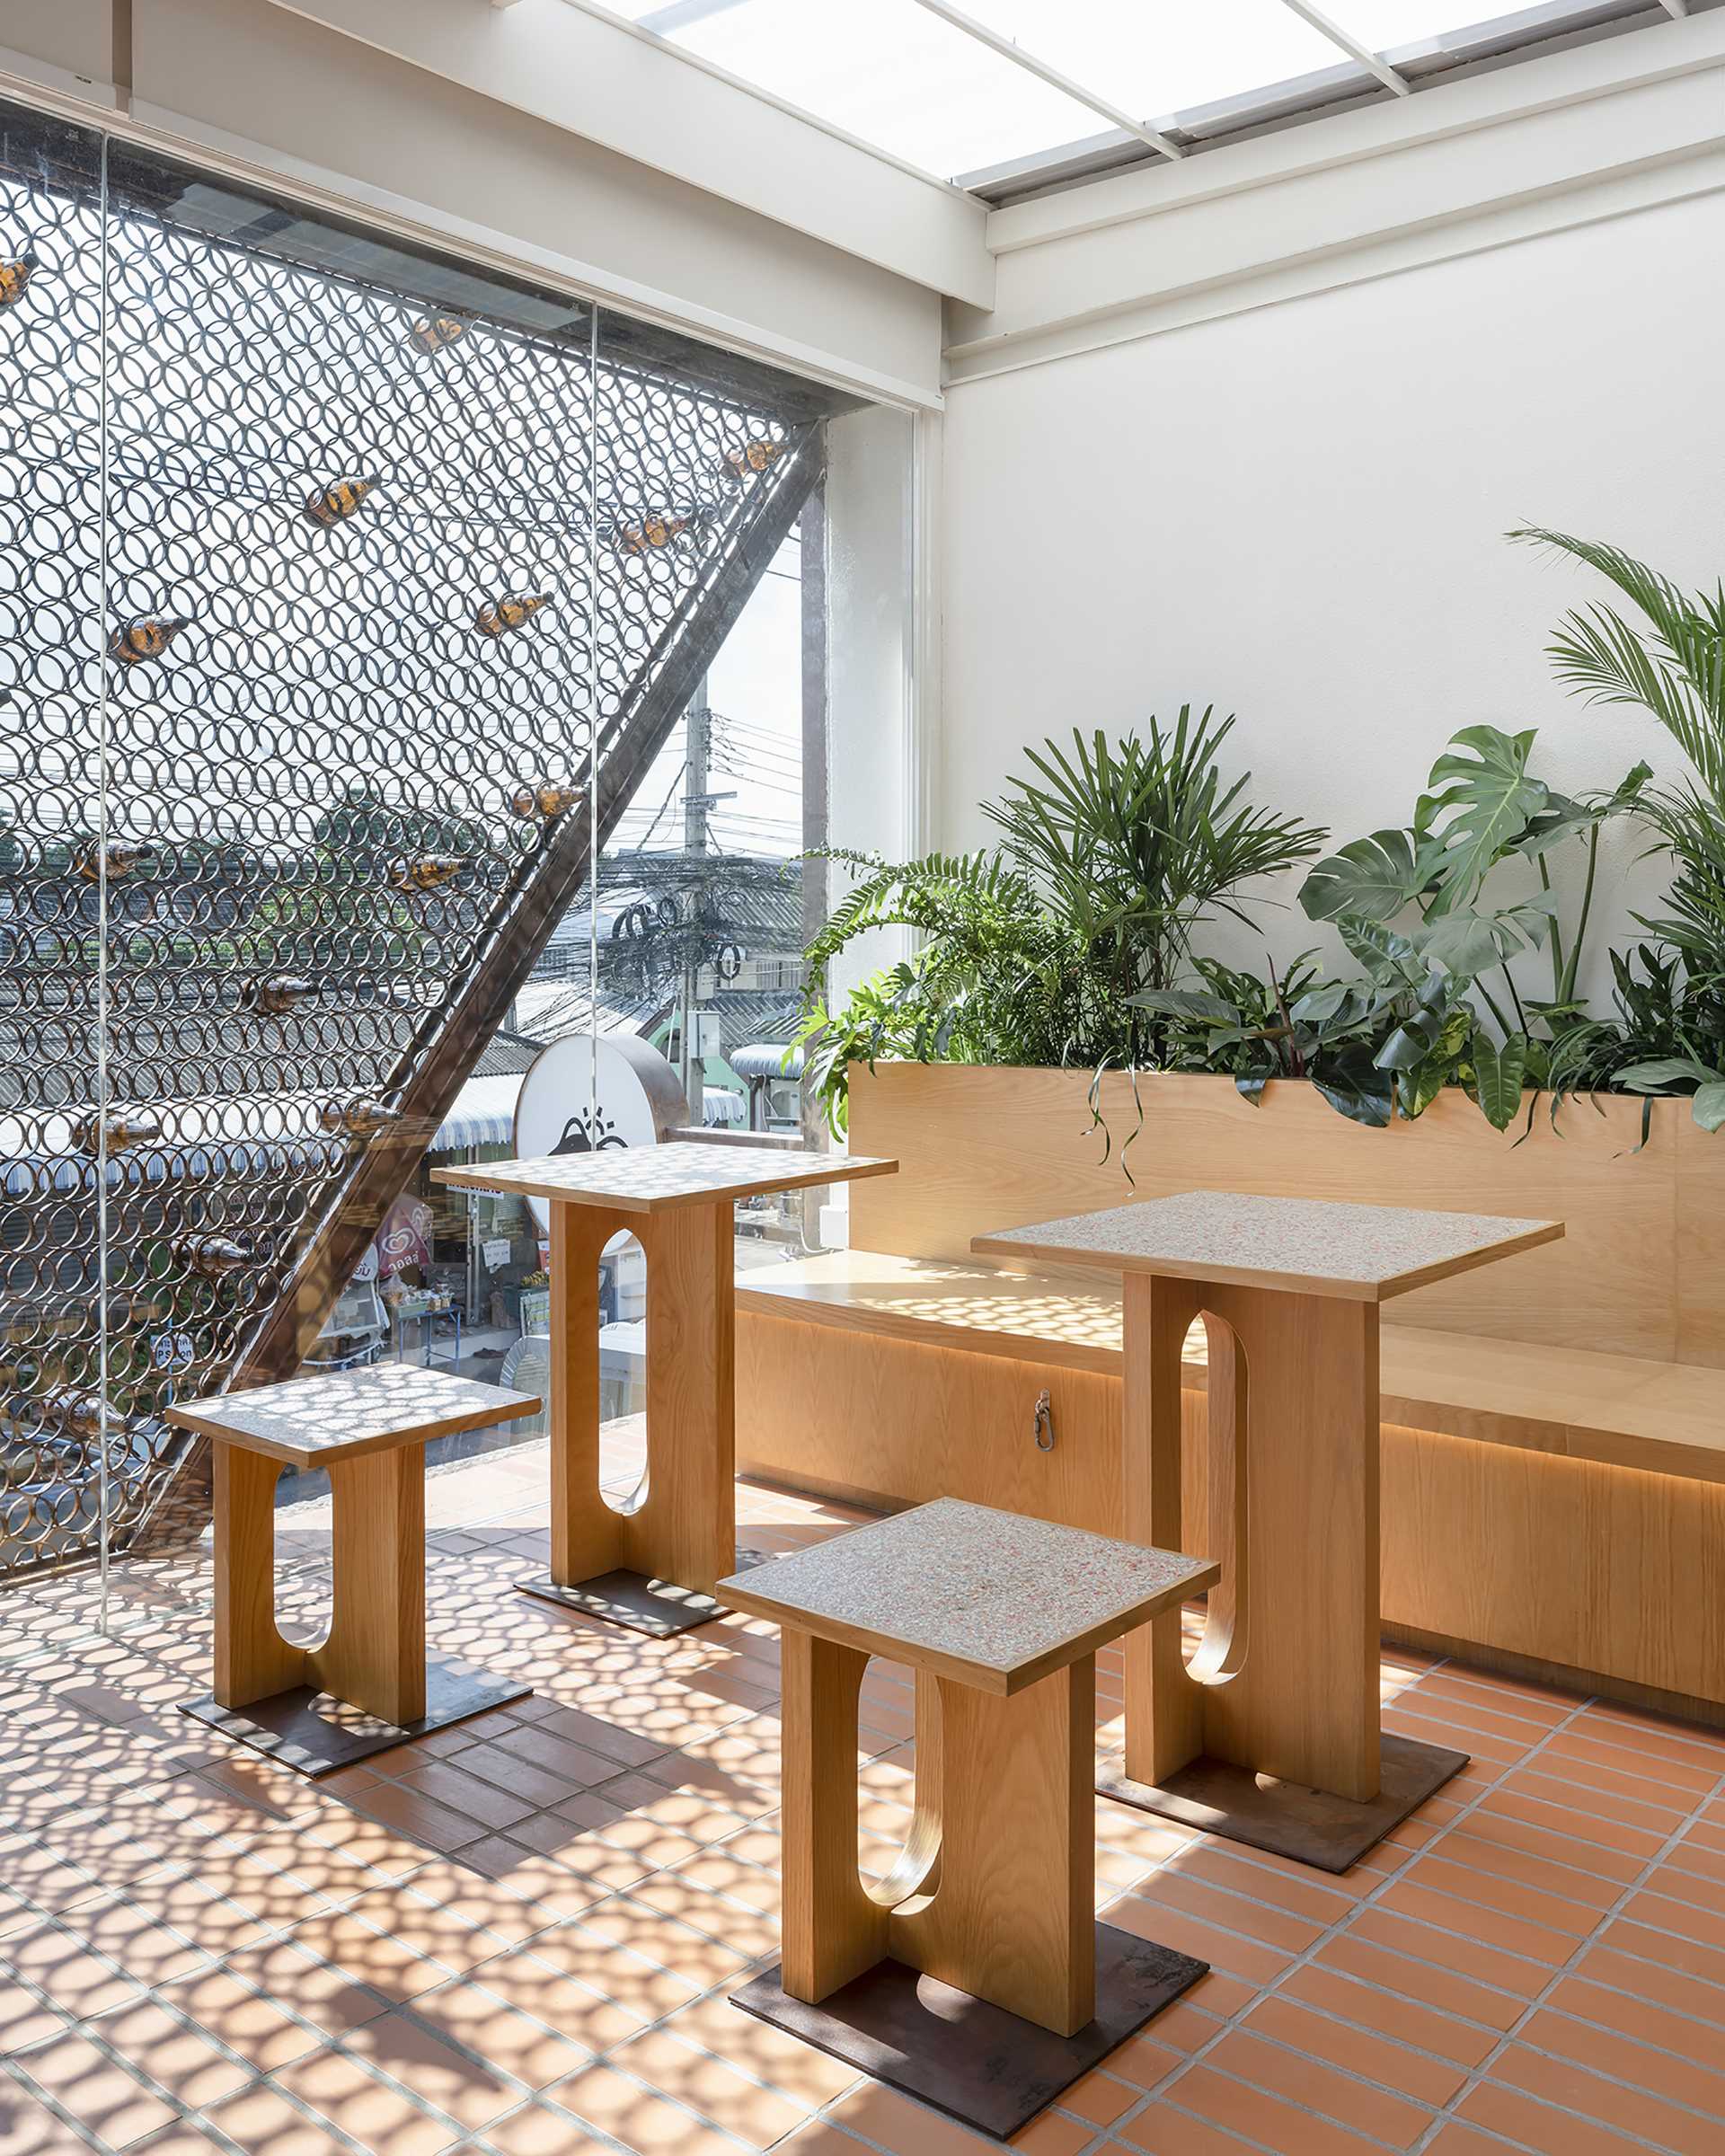 یک کافه مدرن با صندلی و میزهای چوبی.